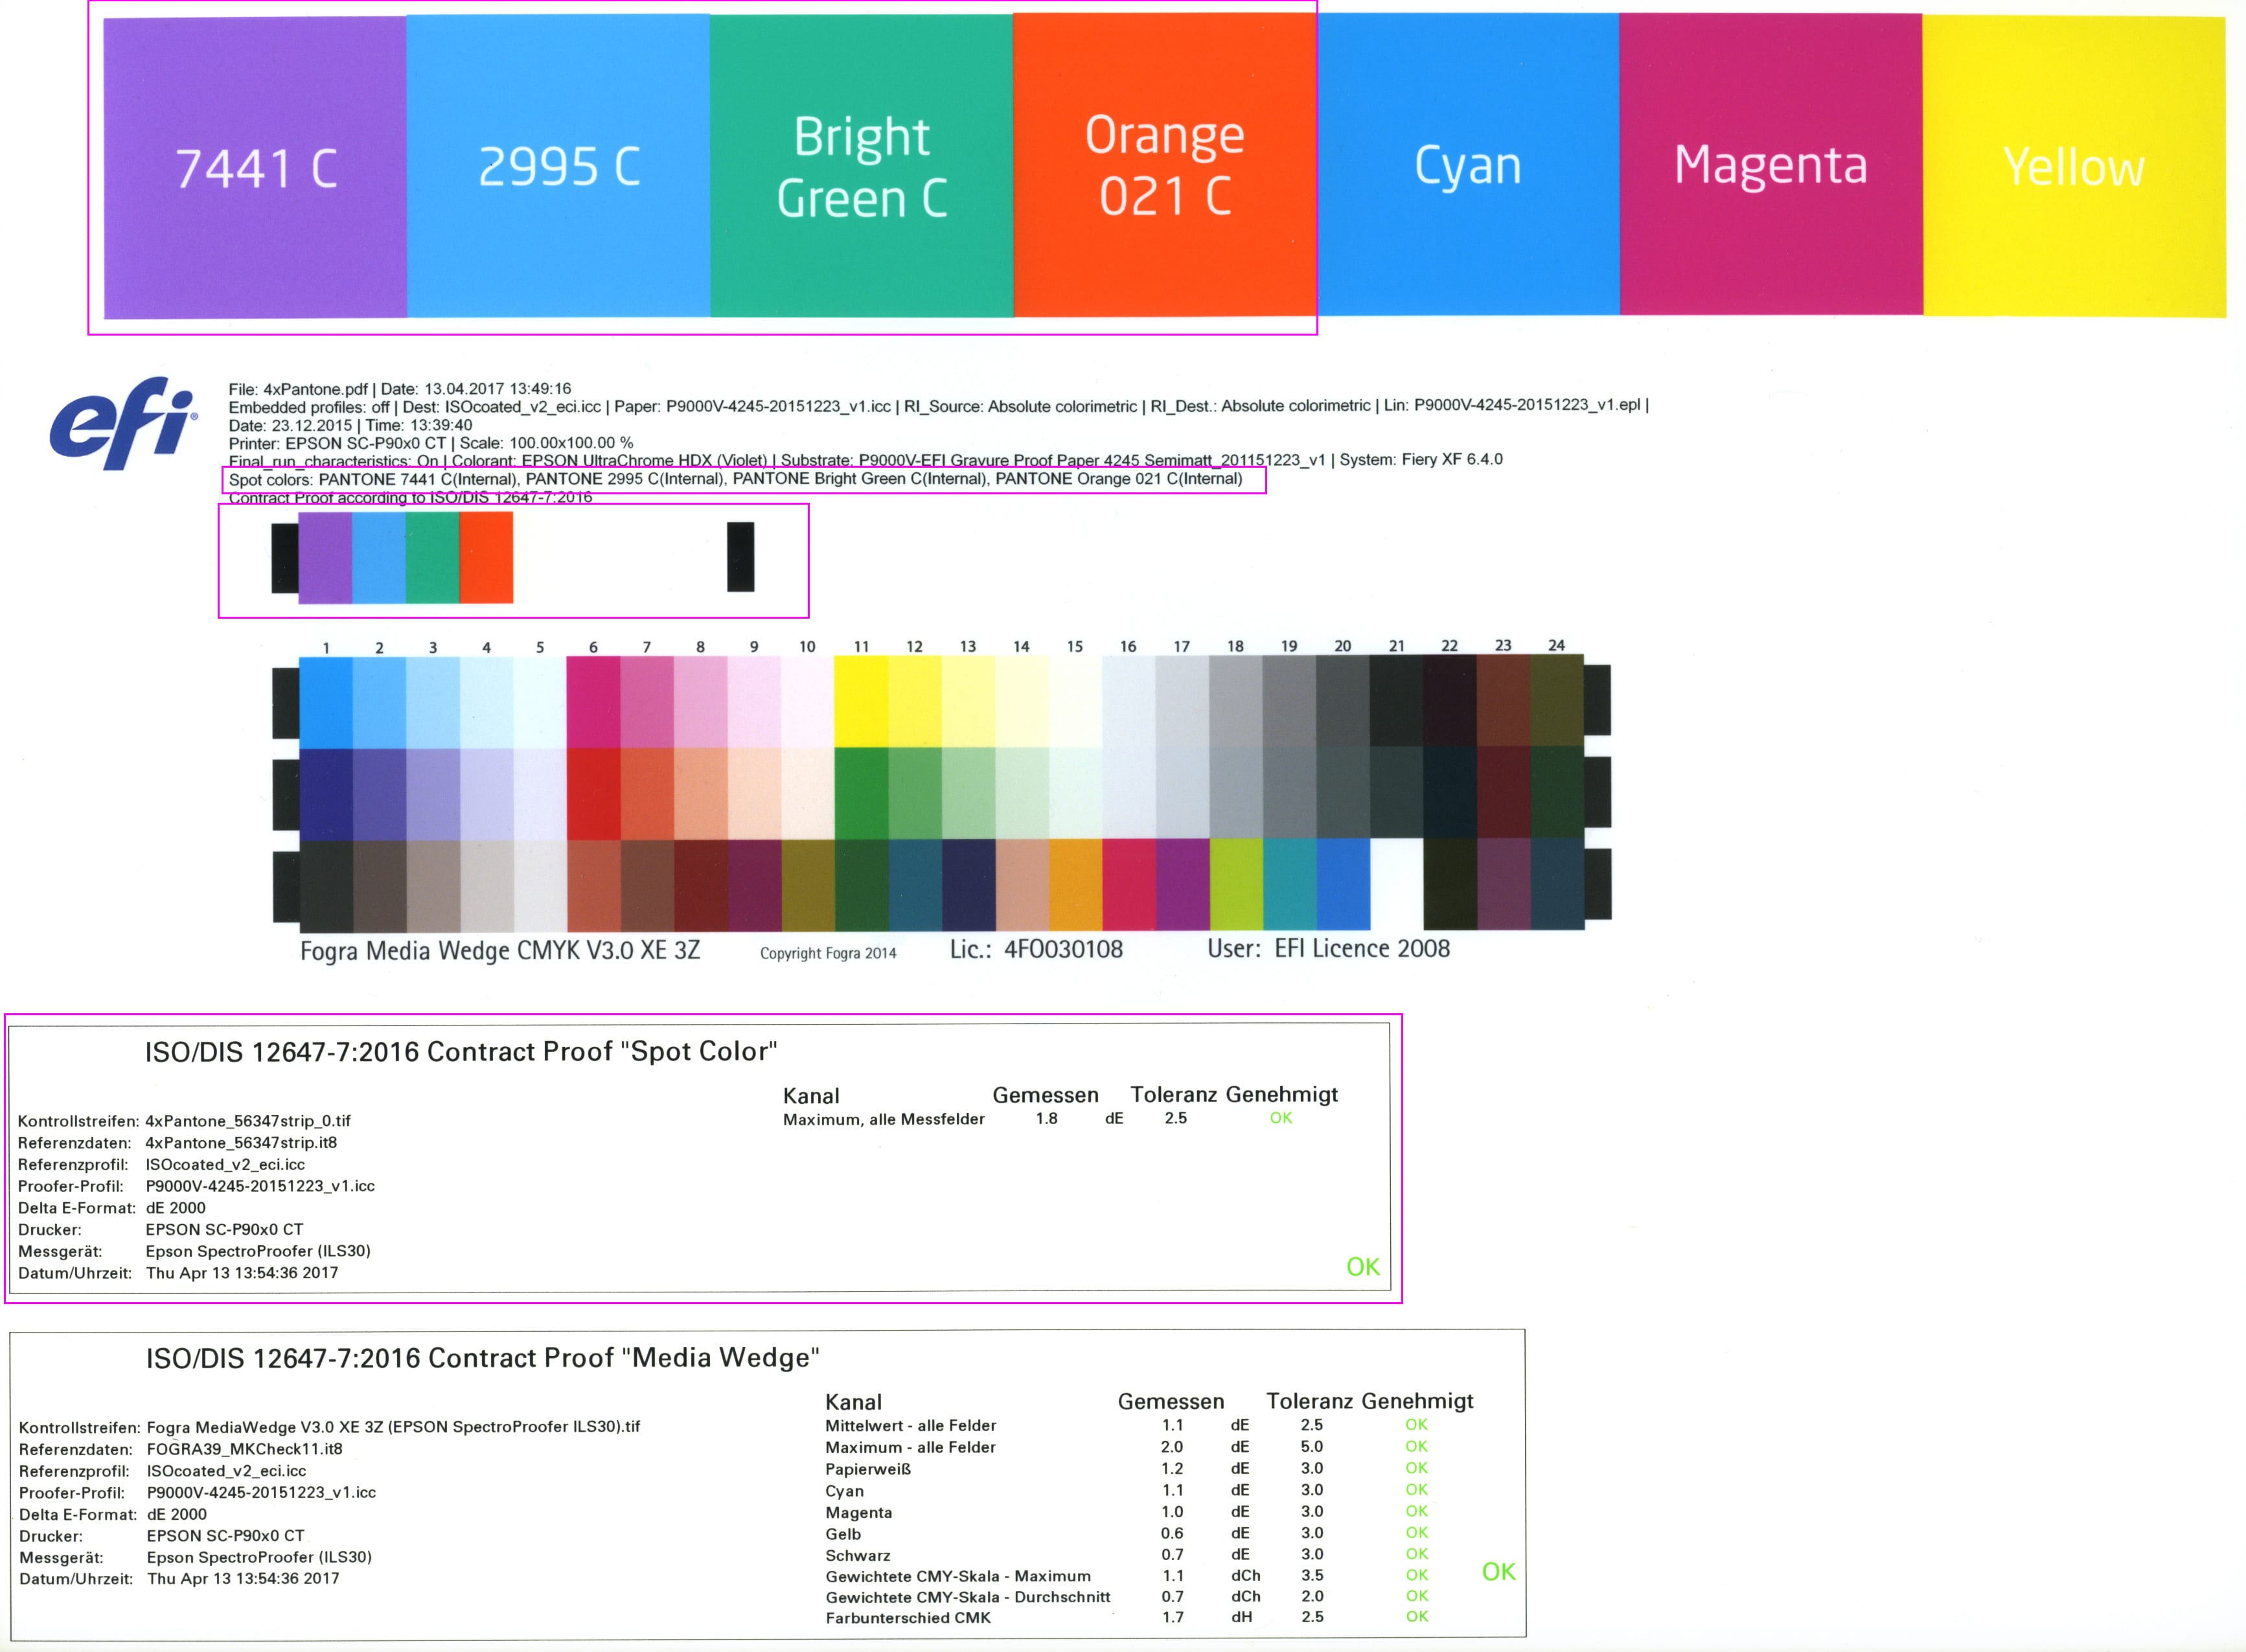 proof.de: Cuier pentru suporturi spotcolor / Cuier pentru suporturi spot color cu evaluare conform ISO/DIS 12647-7:2016